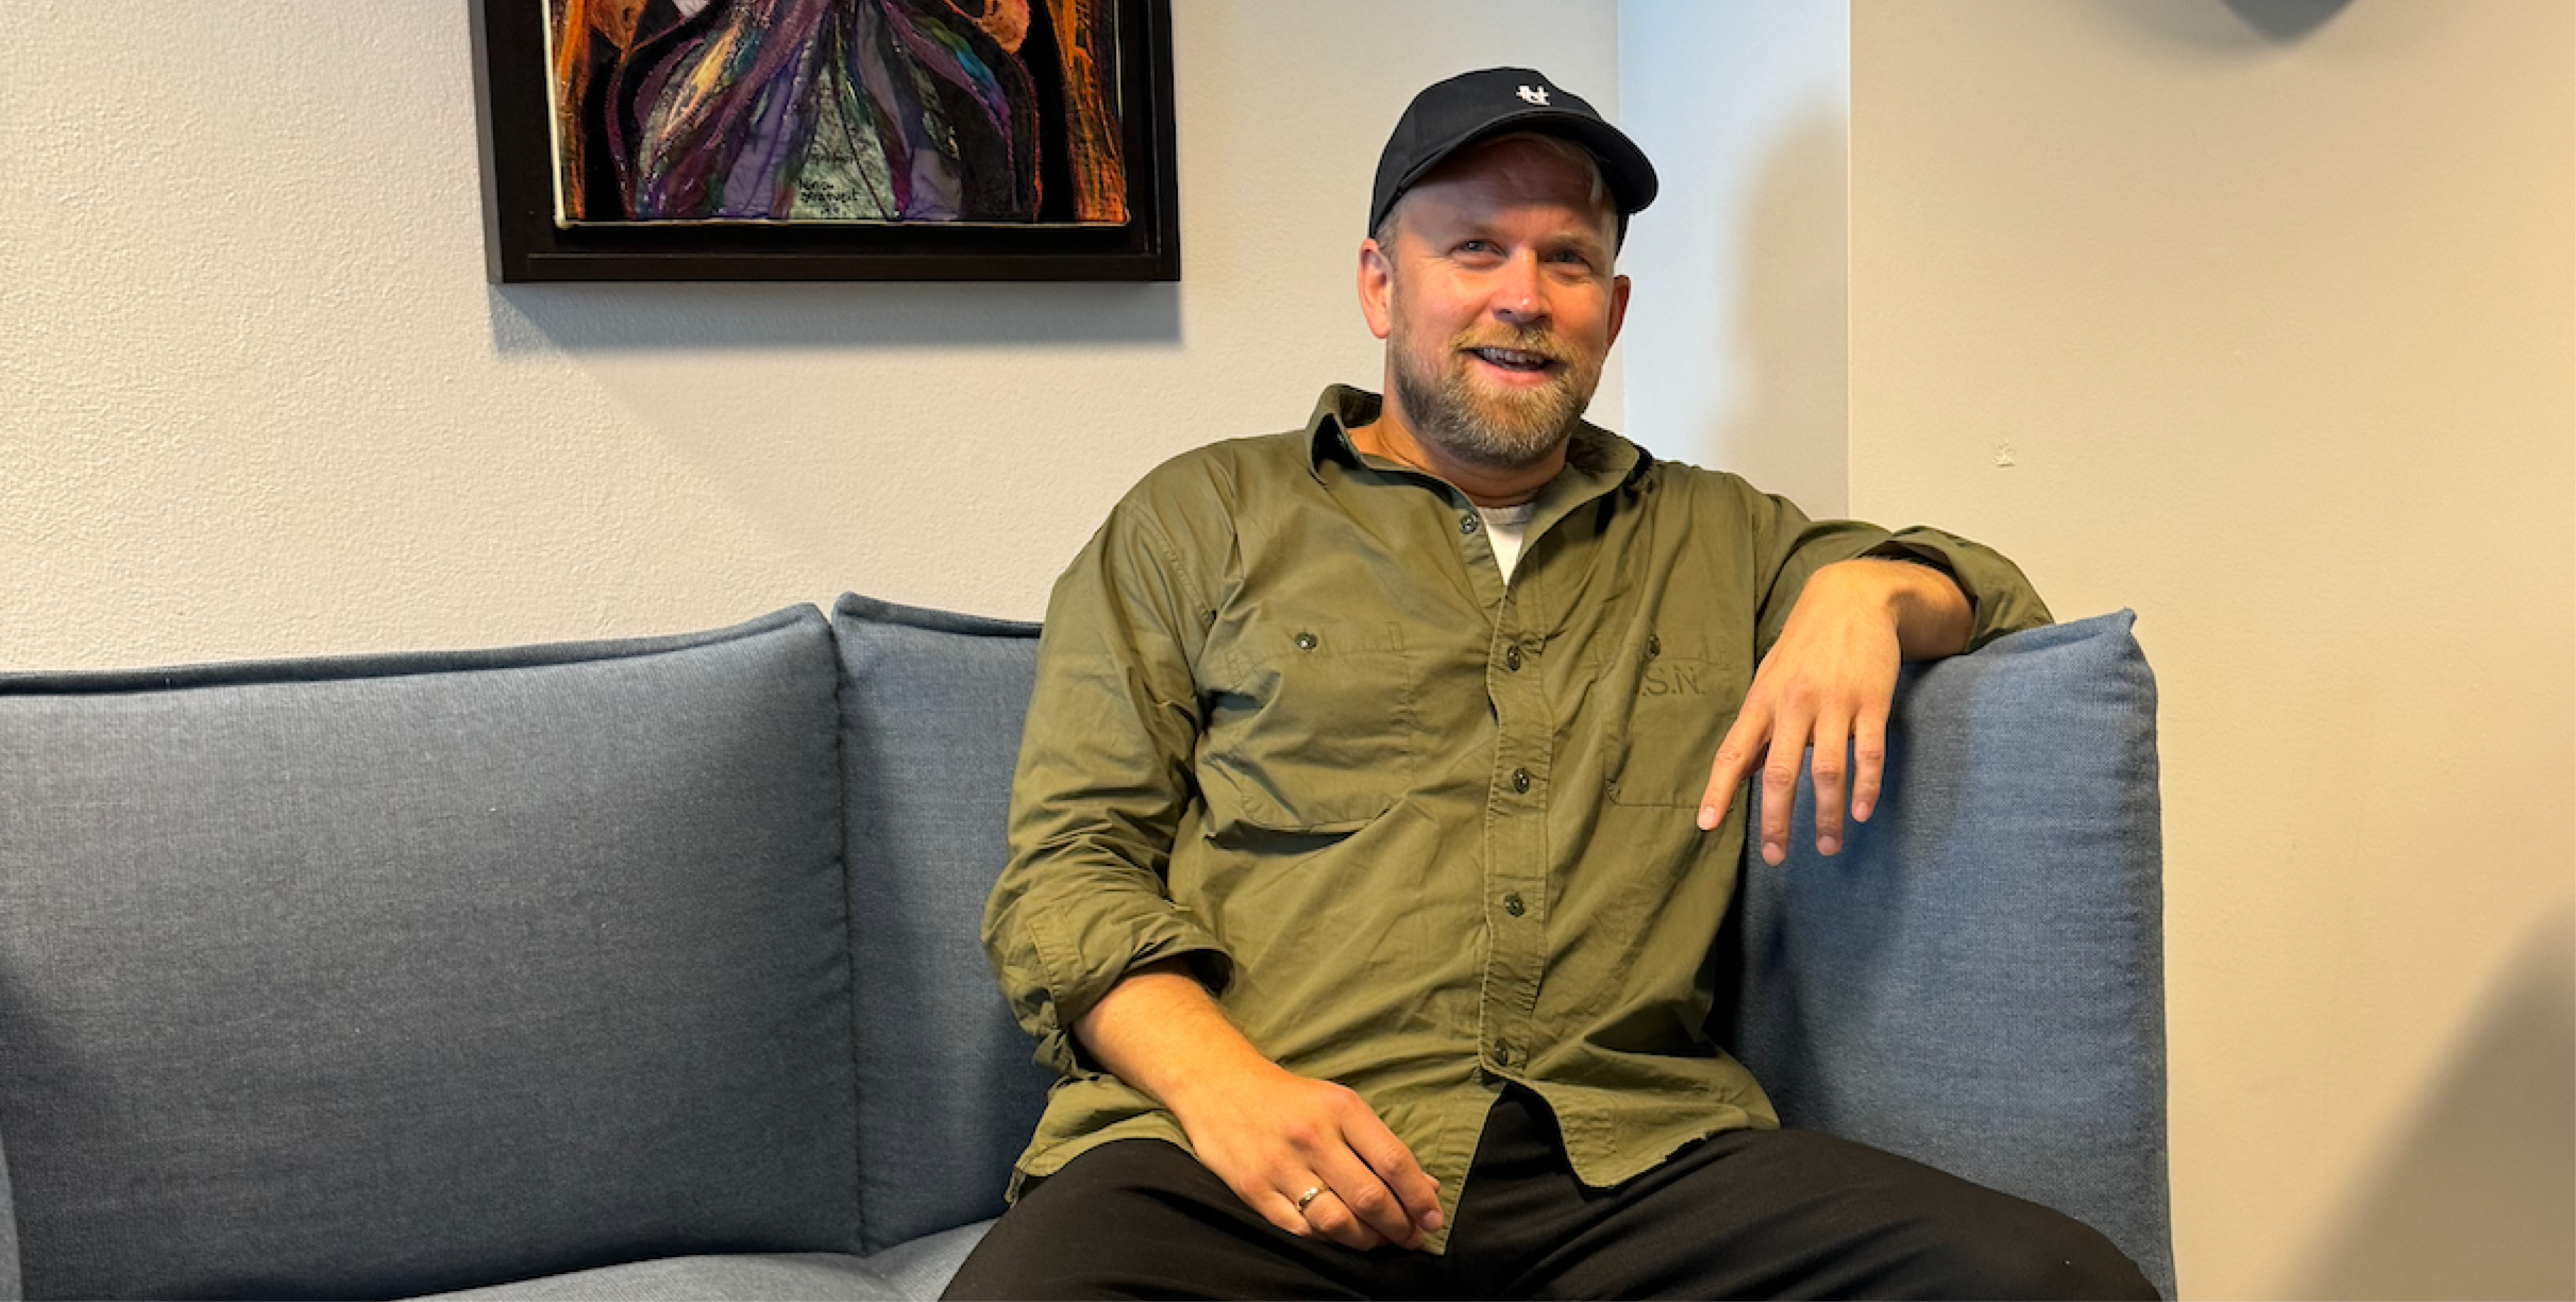 Portrett av mann med caps og skjorte som sitter i sofa på et kontor og smiler